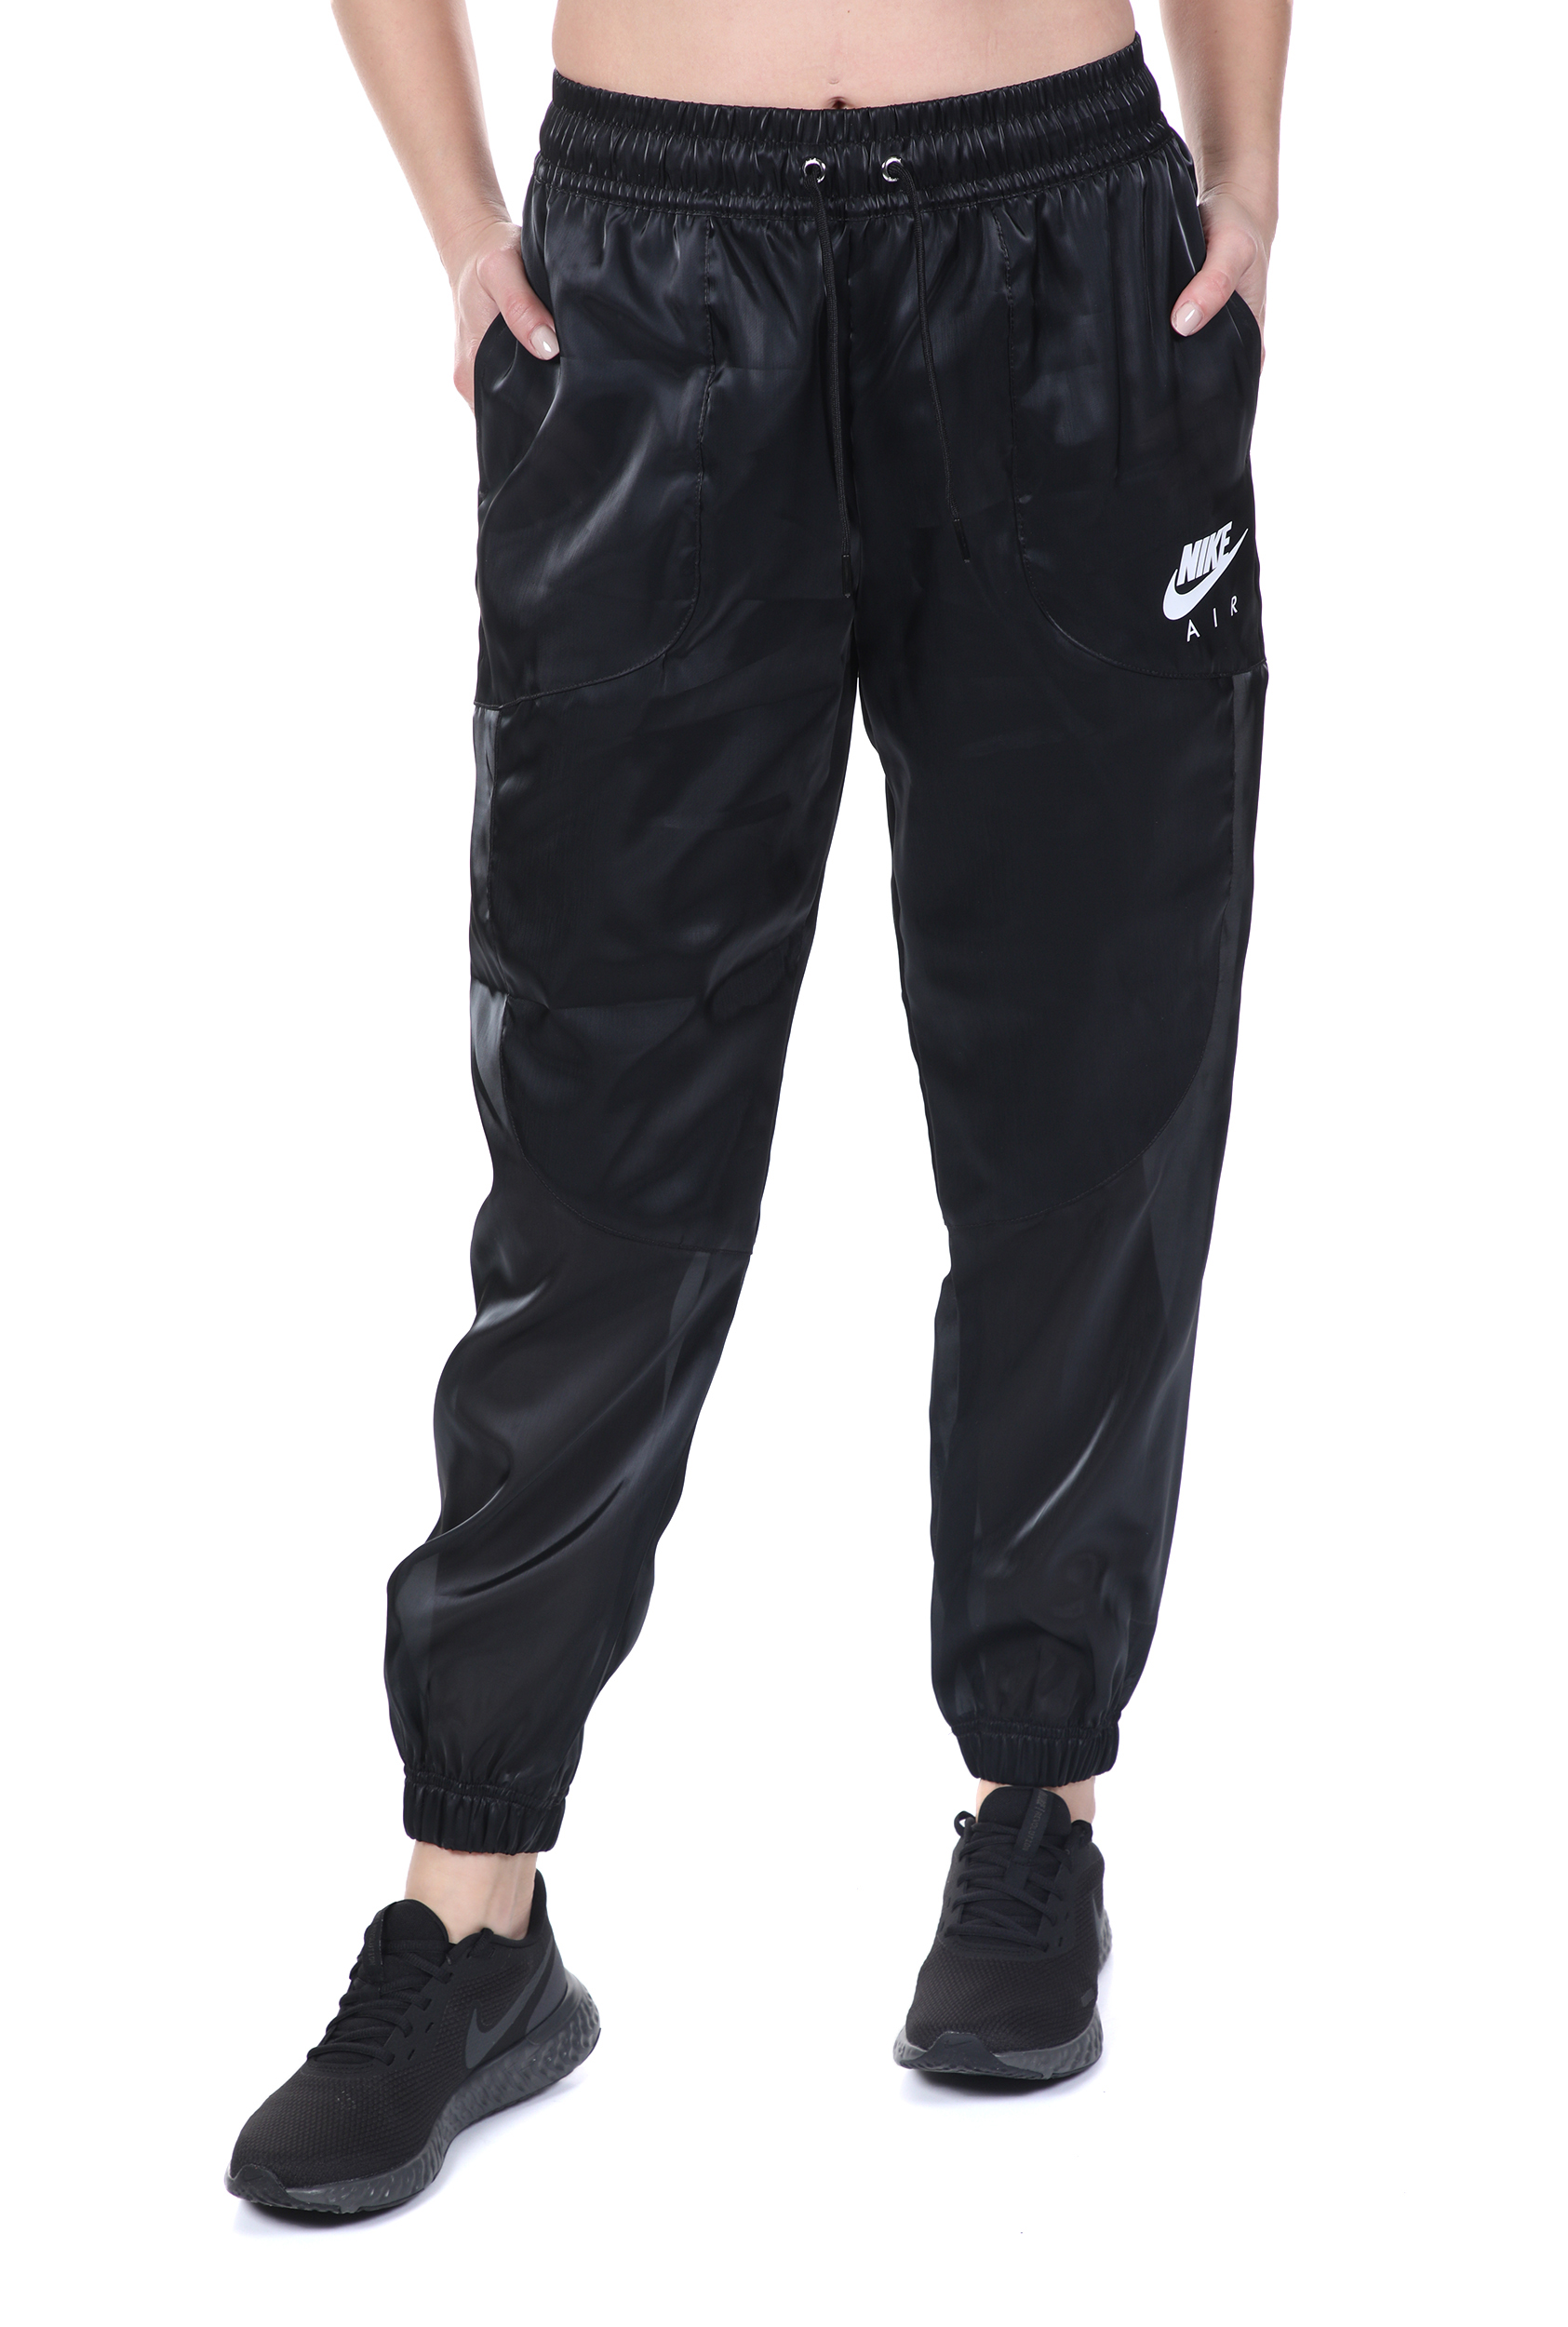 NIKE – Γυναικειο παντελονι φορμας NIKE NSW AIR PANT SHEEN μαυρο